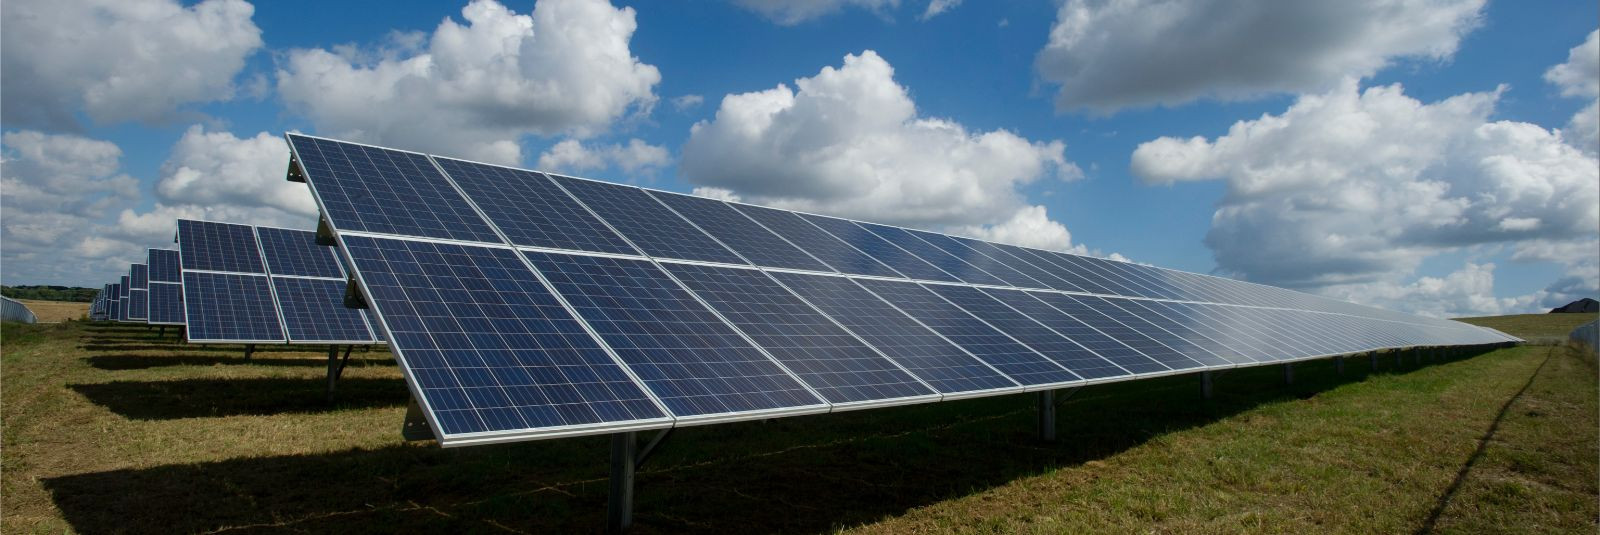 Päikeseparkidest on saanud oluline osa maailma energiarevolutsioonist, ...